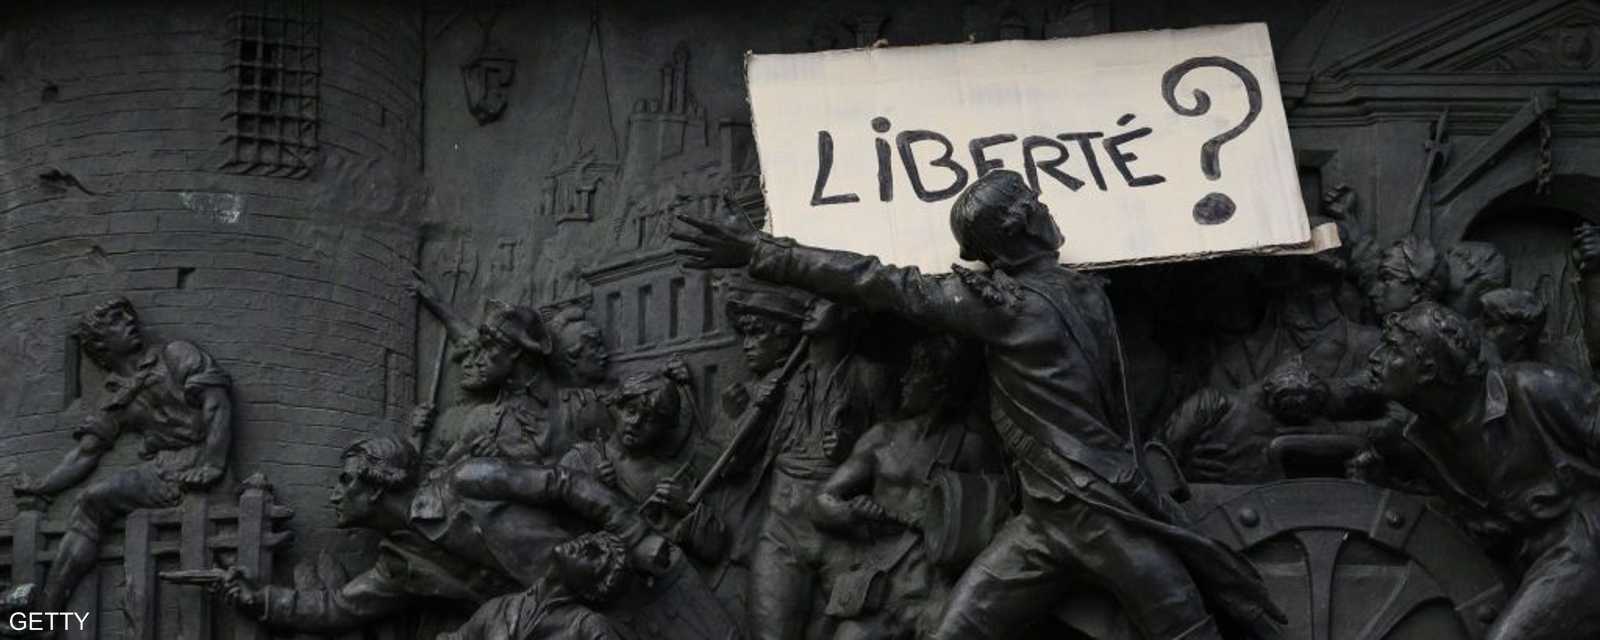 لافتة عن "الحرية" فوق تمثال أثناء الاحتجاج على القانون المثير للجدل